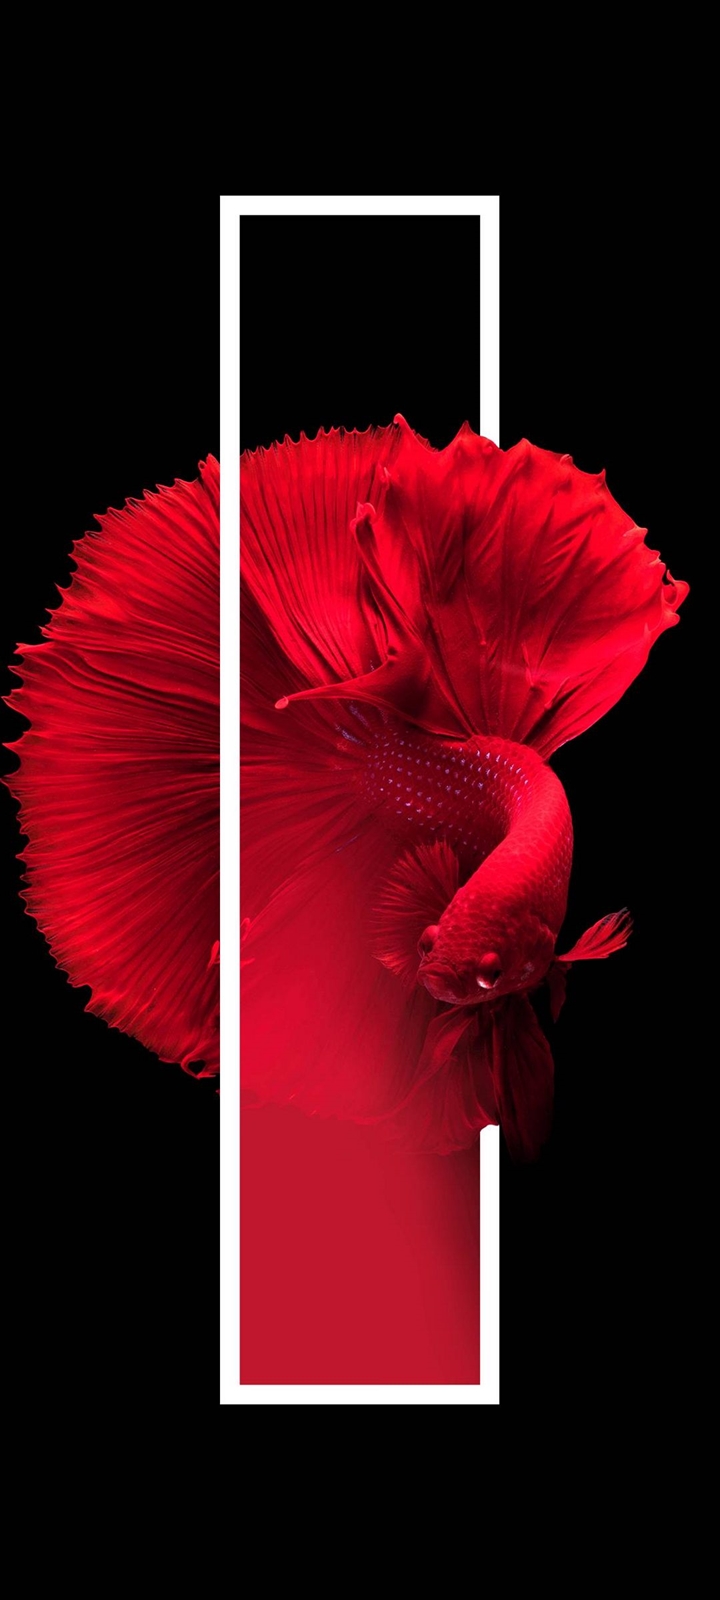 美しい赤い金魚 Galaxy A32 5g Androidスマホ壁紙 待ち受け スマラン